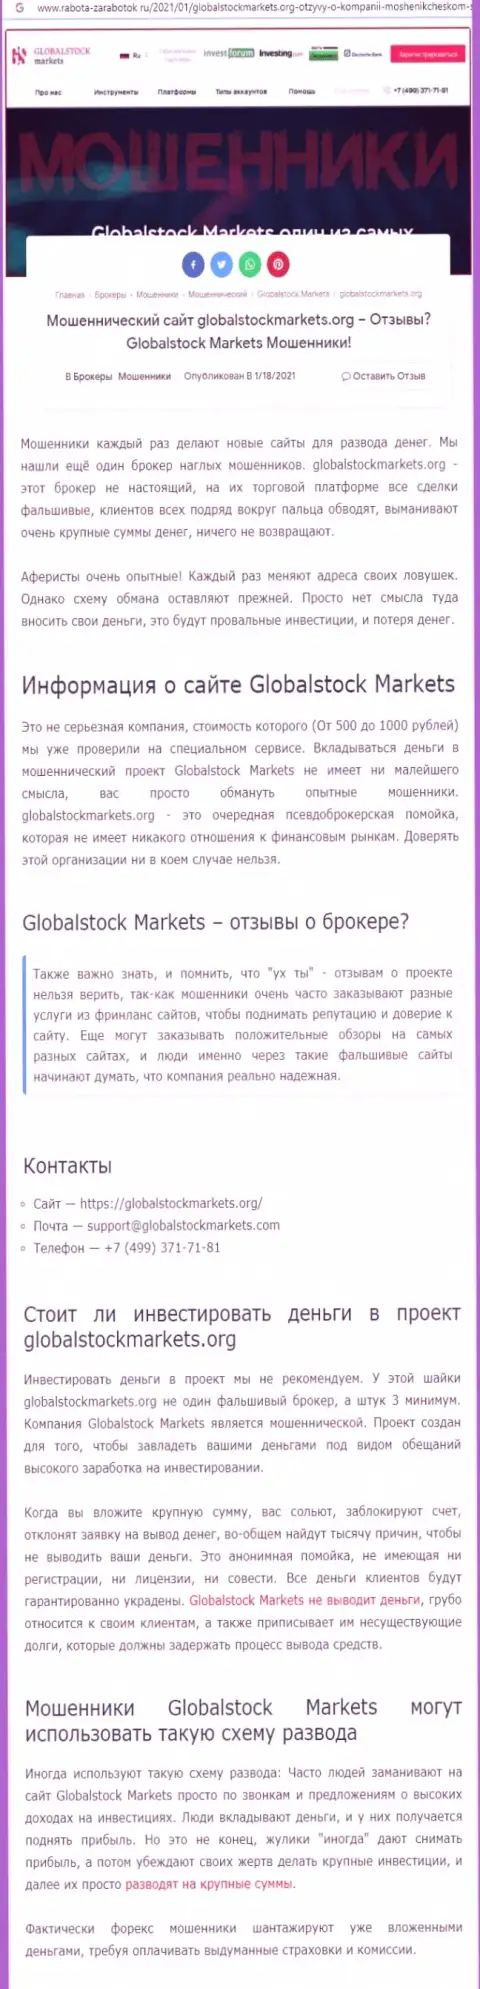 Глобал СтокМаркетс - это РАЗВОДНЯК НА ДЕНЕЖНЫЕ СРЕДСТВА !!! БУДЬТЕ КРАЙНЕ ОСТОРОЖНЫ (обзорная статья)